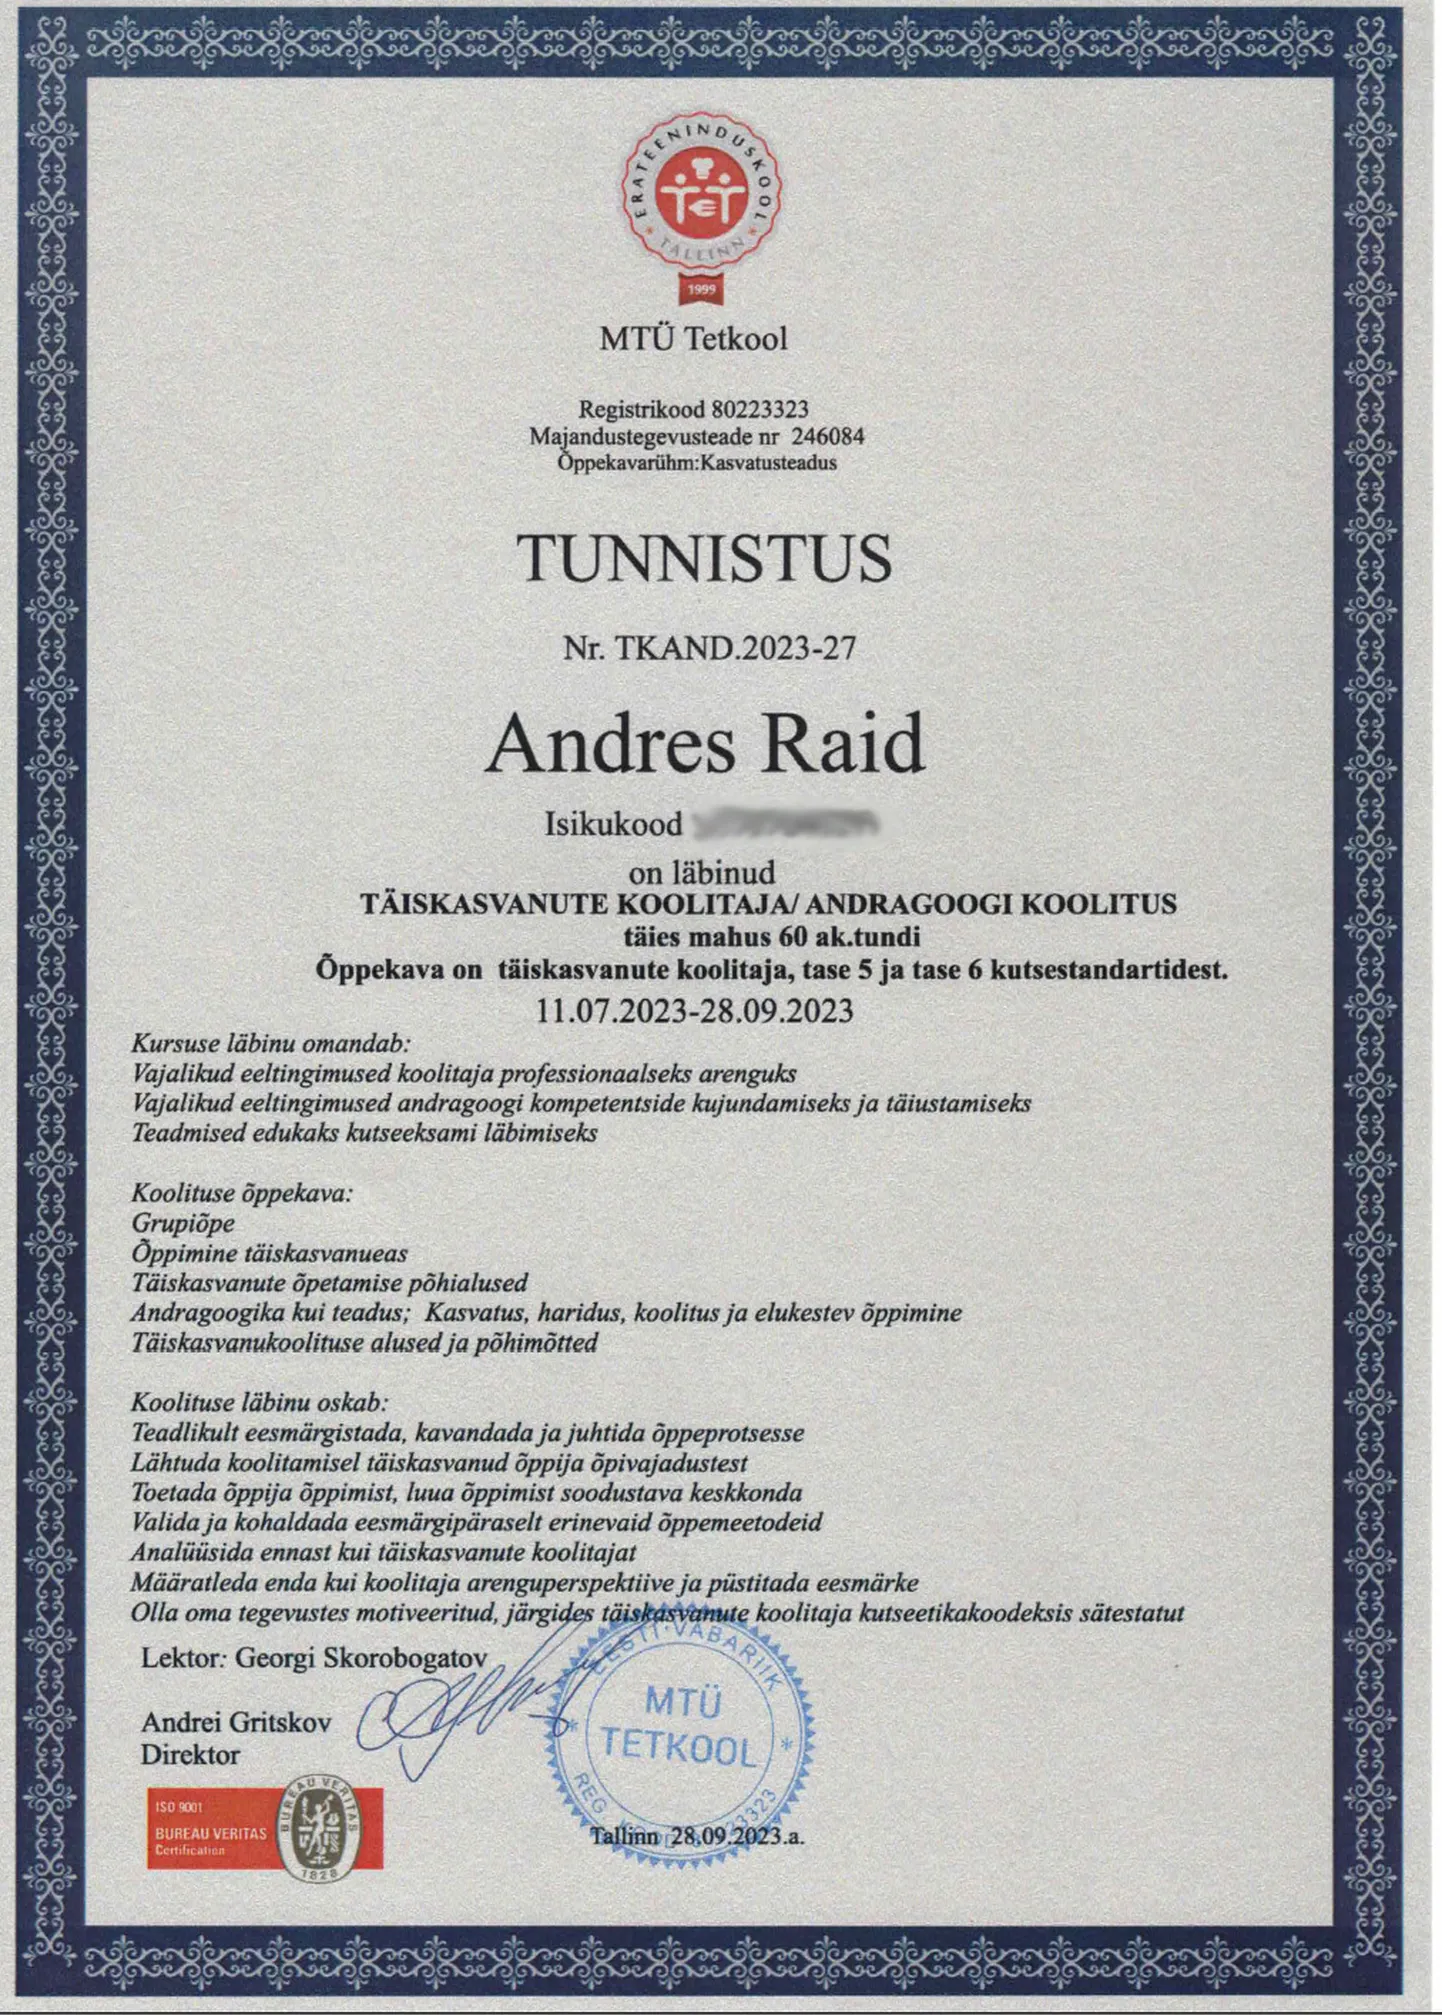 «Kui puudub kehtiv sertifikaat, on logo kasutamine keelatud,» sõnas Bureau Veritase Eesti juhataja ja juhtaudiitor Tiit Hindreus.